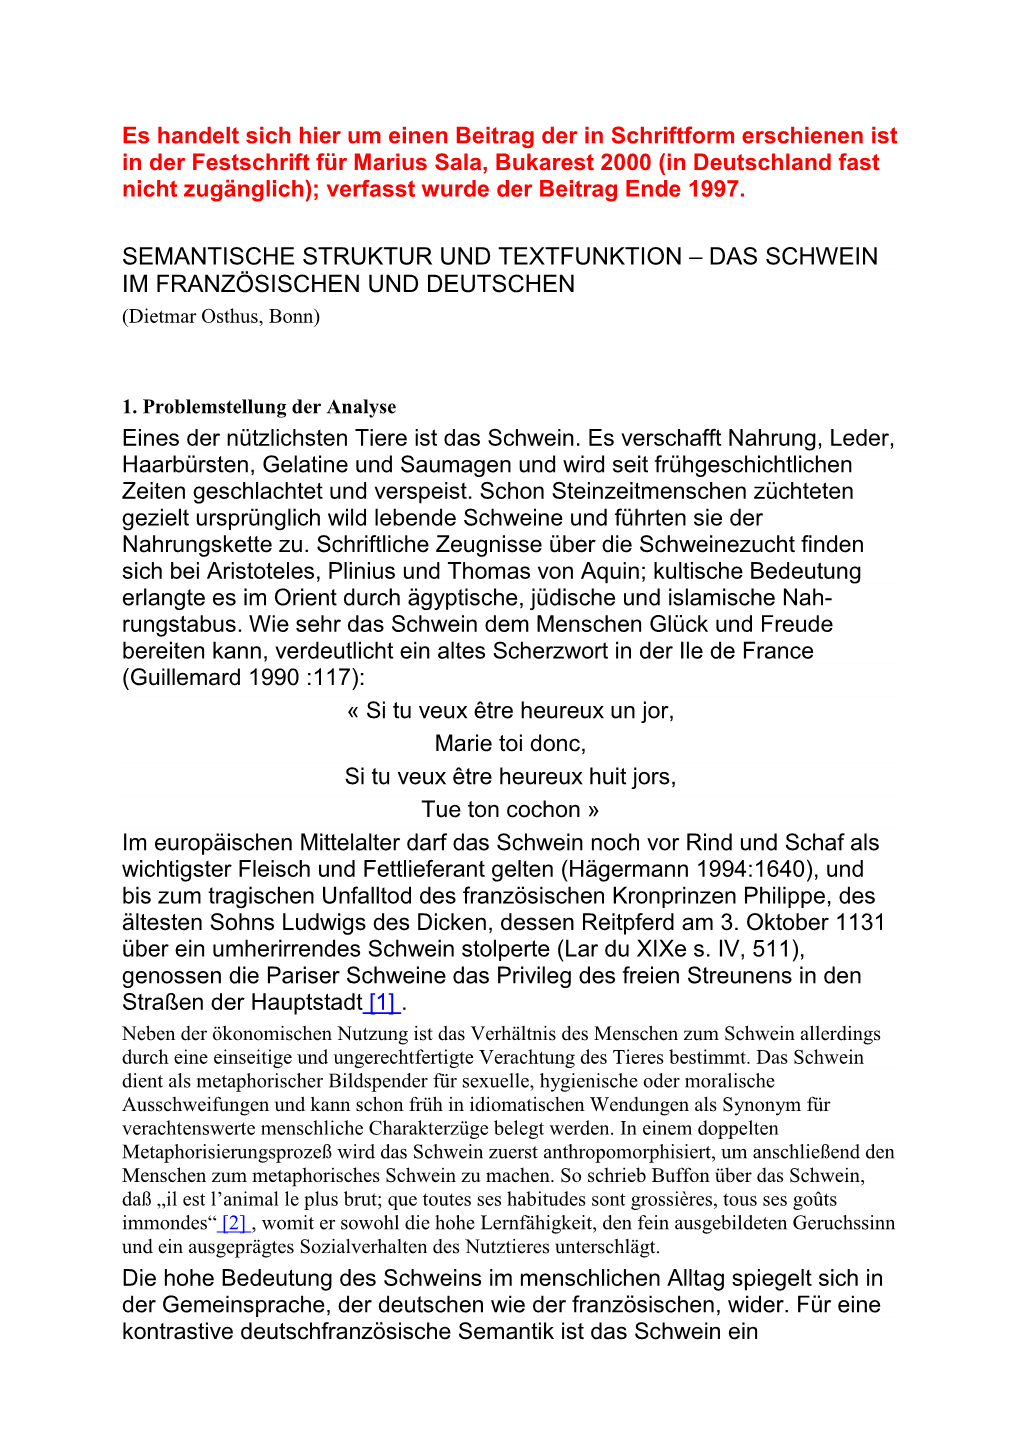 SEMANTISCHE STRUKTUR UND TEXTFUNKTION – DAS SCHWEIN IM FRANZÖSISCHEN UND DEUTSCHEN (Dietmar Osthus, Bonn)